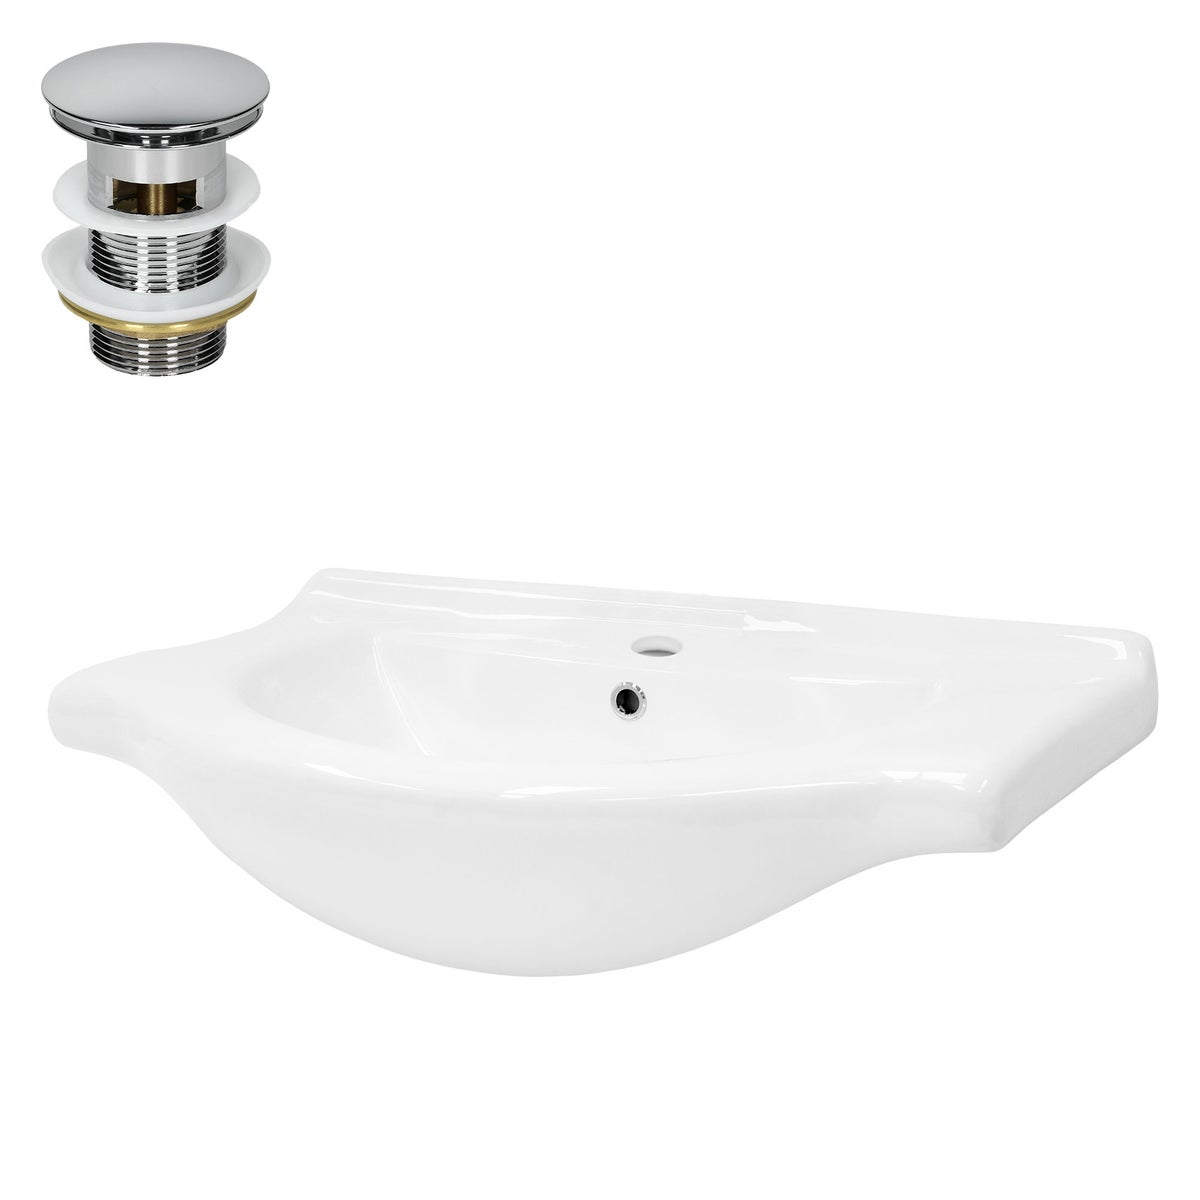 ML-Design Waschbecken aus Keramik Weiß 77x21,5x51,5 cm inkl. Ablaufgarnitur, Einbauwaschbecken mit Überlauf, Aufsatzwaschbecken Einbauwaschtisch Waschschale Waschplatz Handwaschbecken, für Badezimmer